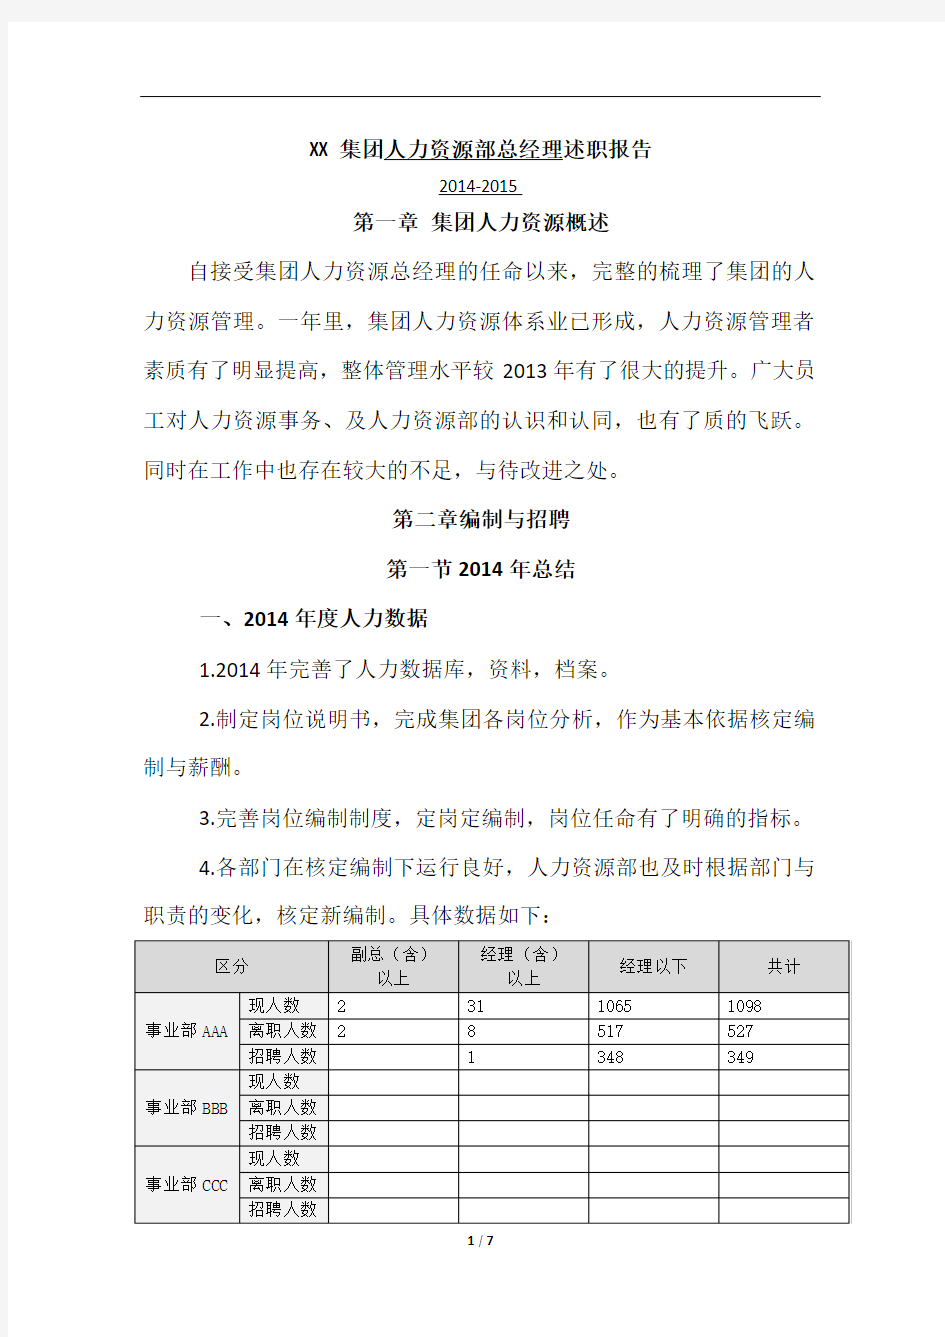 人力资源部总经理述职报告(上传)2014.12.30